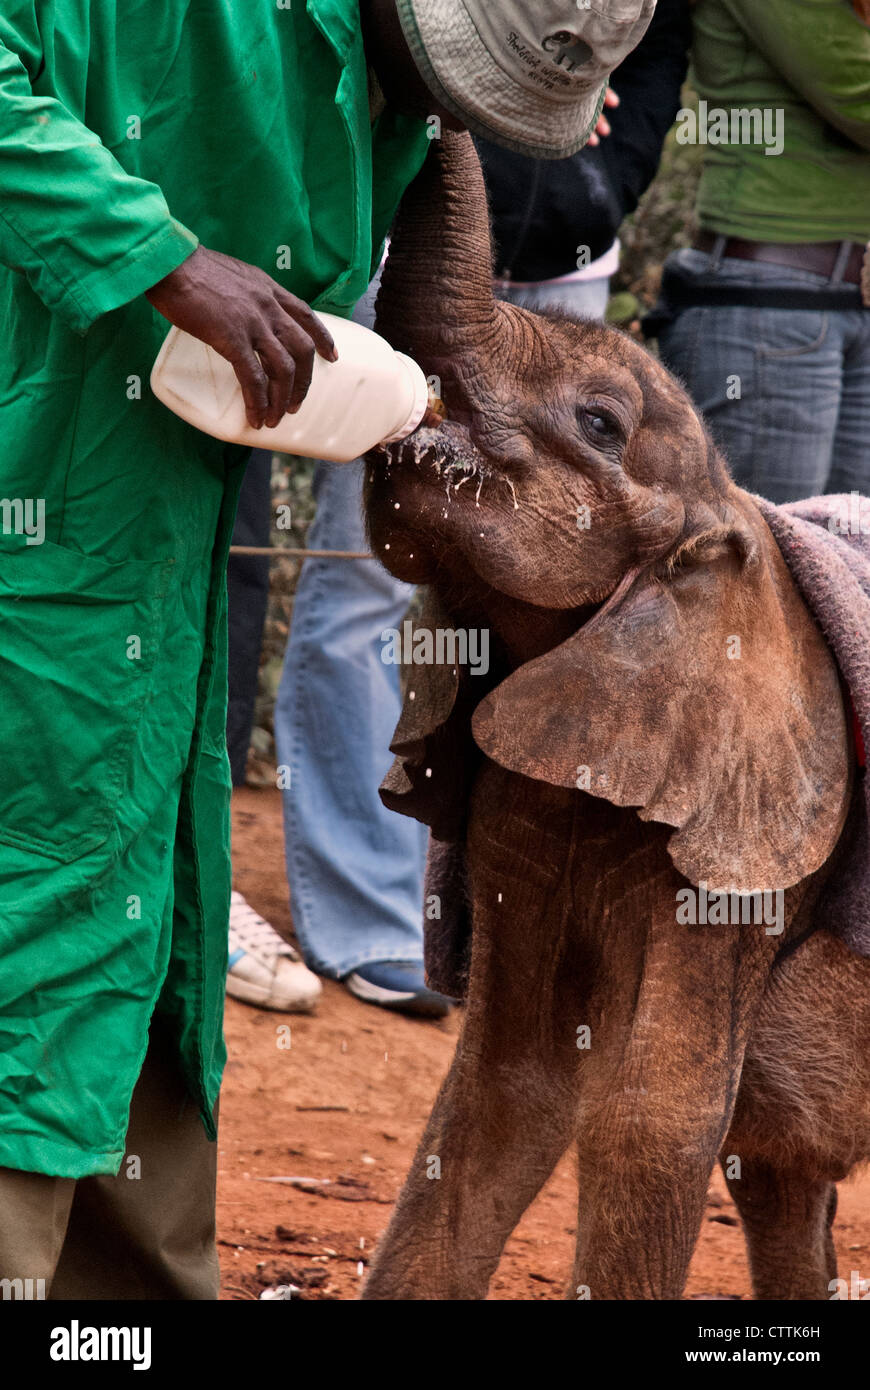 Elefante africano di vitello, Loxodonta africana, bere latte da una bottiglia, Sheldrick l'Orfanotrofio degli Elefanti, Nairobi, Kenya, Africa Foto Stock